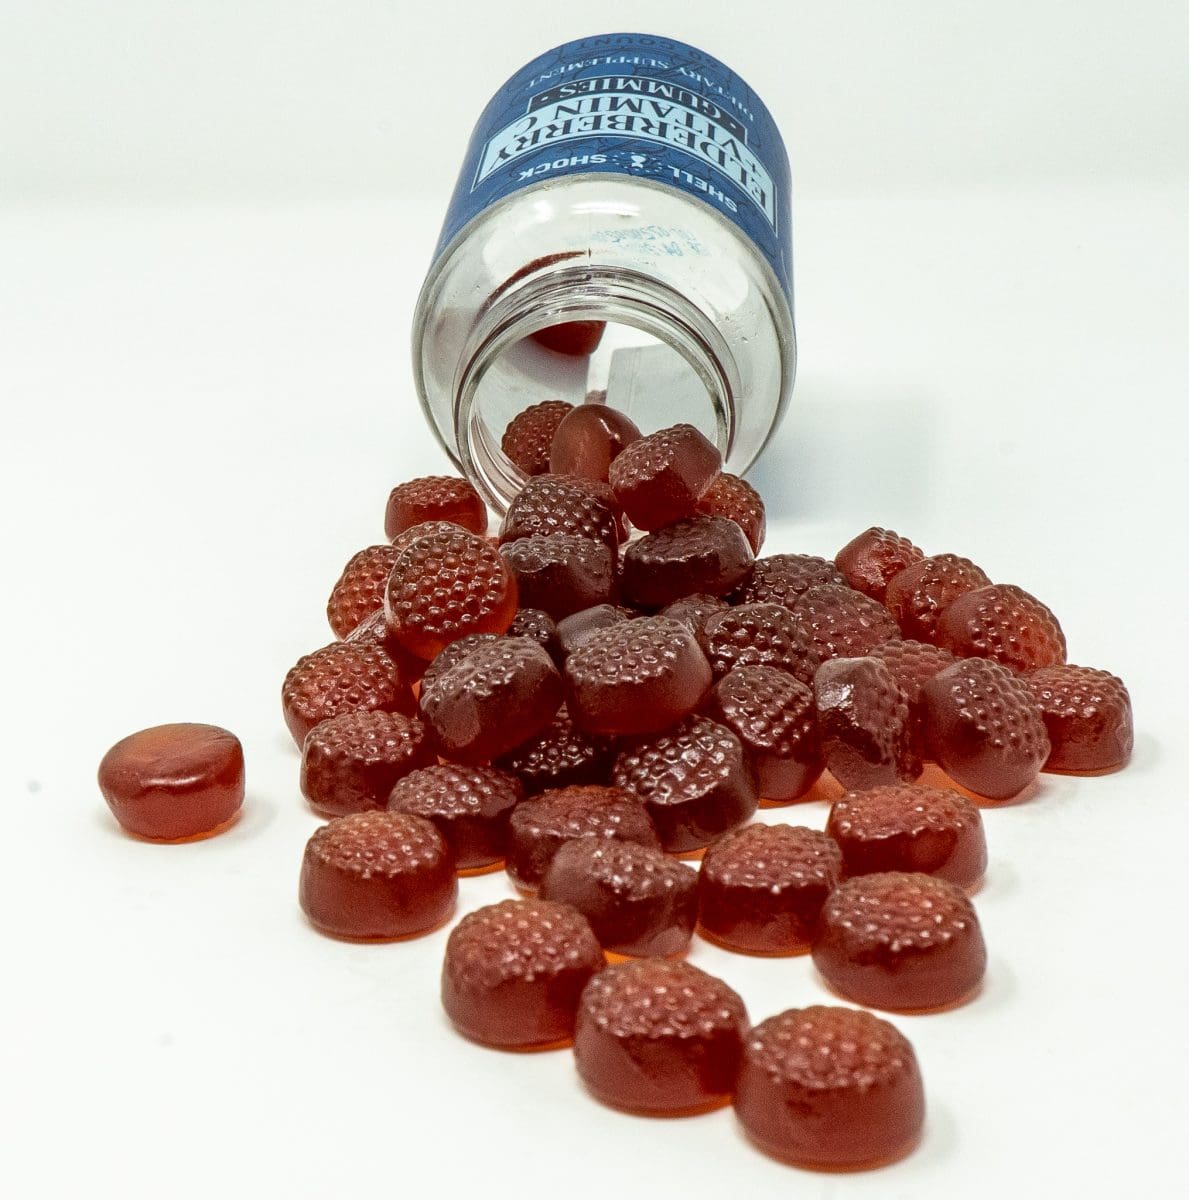 Shell Shock Elderberry + Vitamin C Gummies spilled bottle